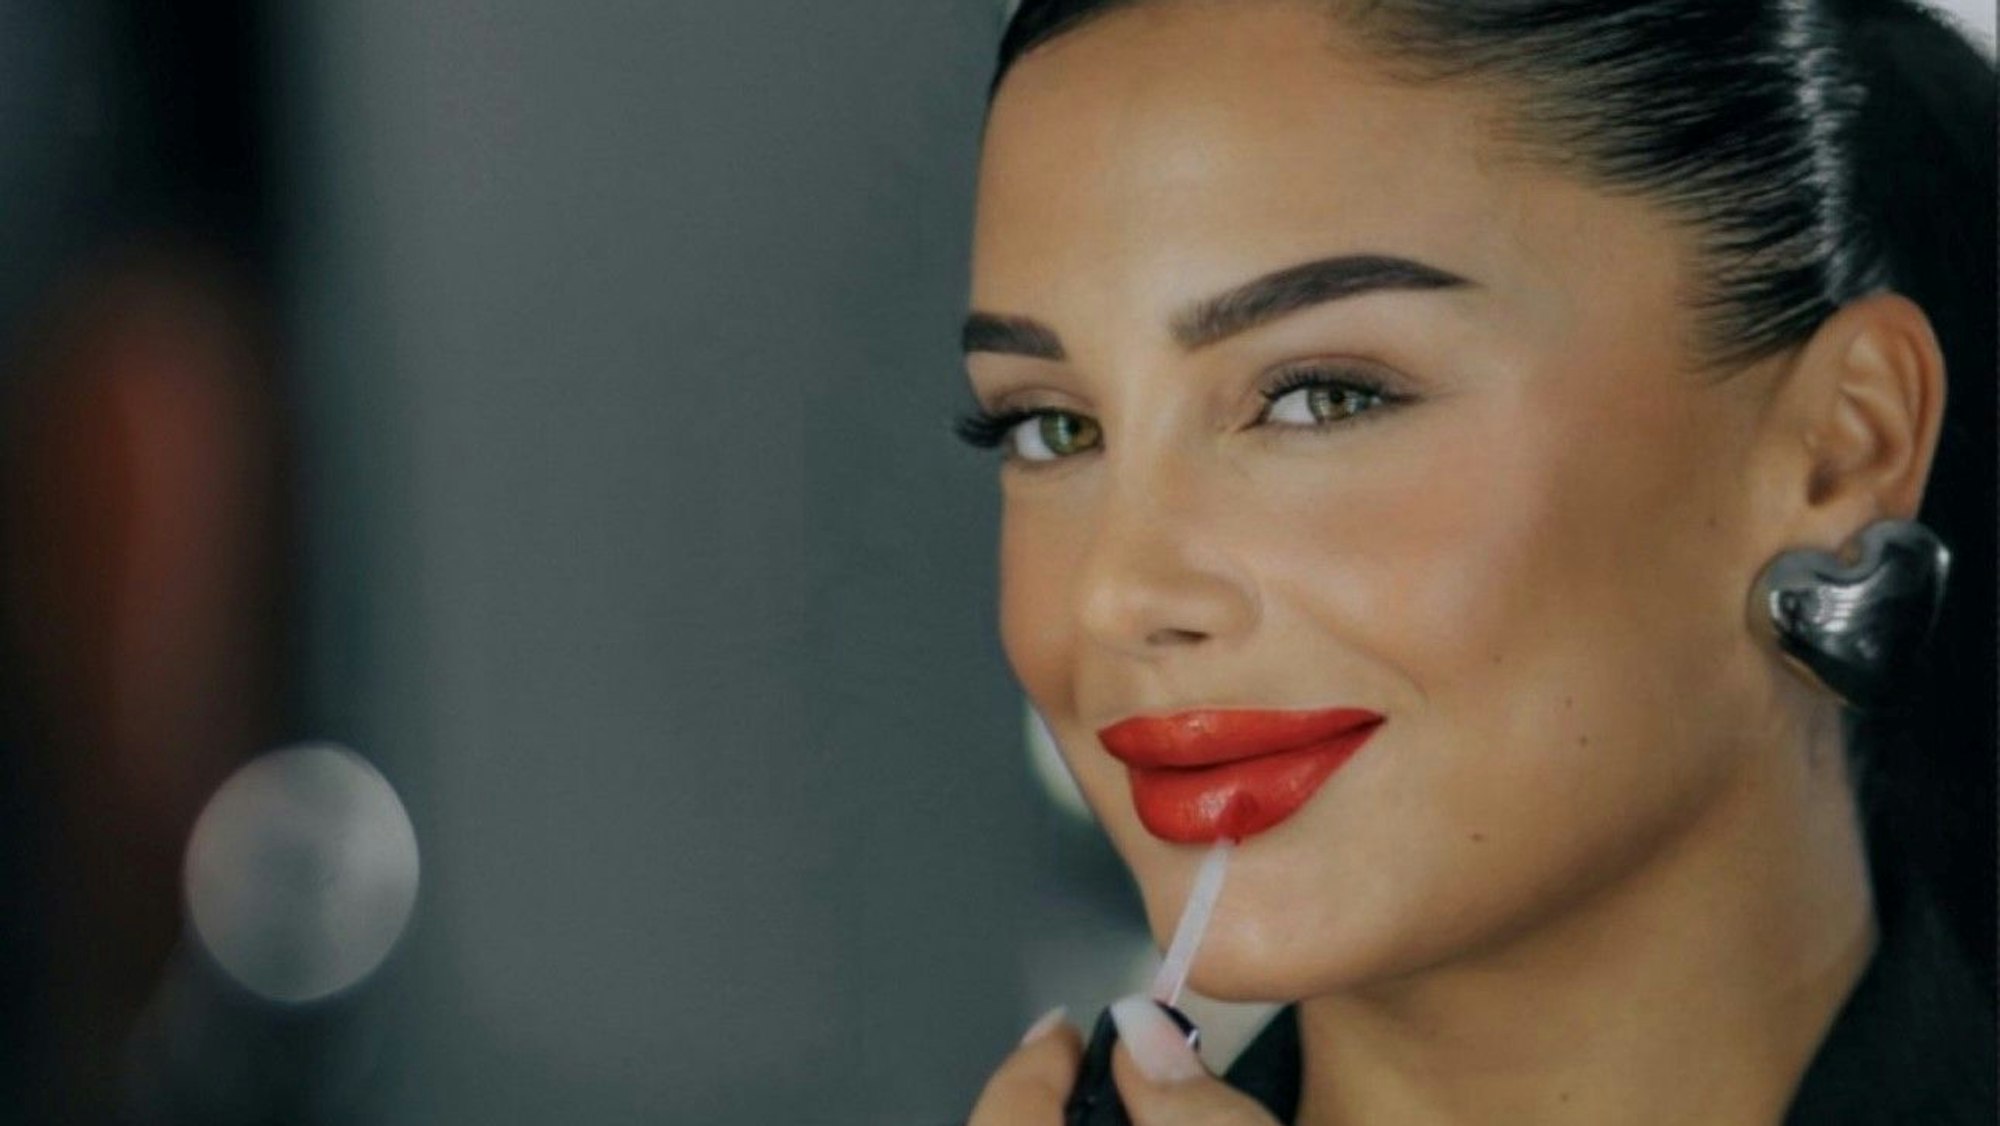 Die 25-jährige Make-Up-Künstlerin Zana Sabani tritt bei den europäischen Meisterschaften auf der Beauty-Messe in Düsseldorf an.